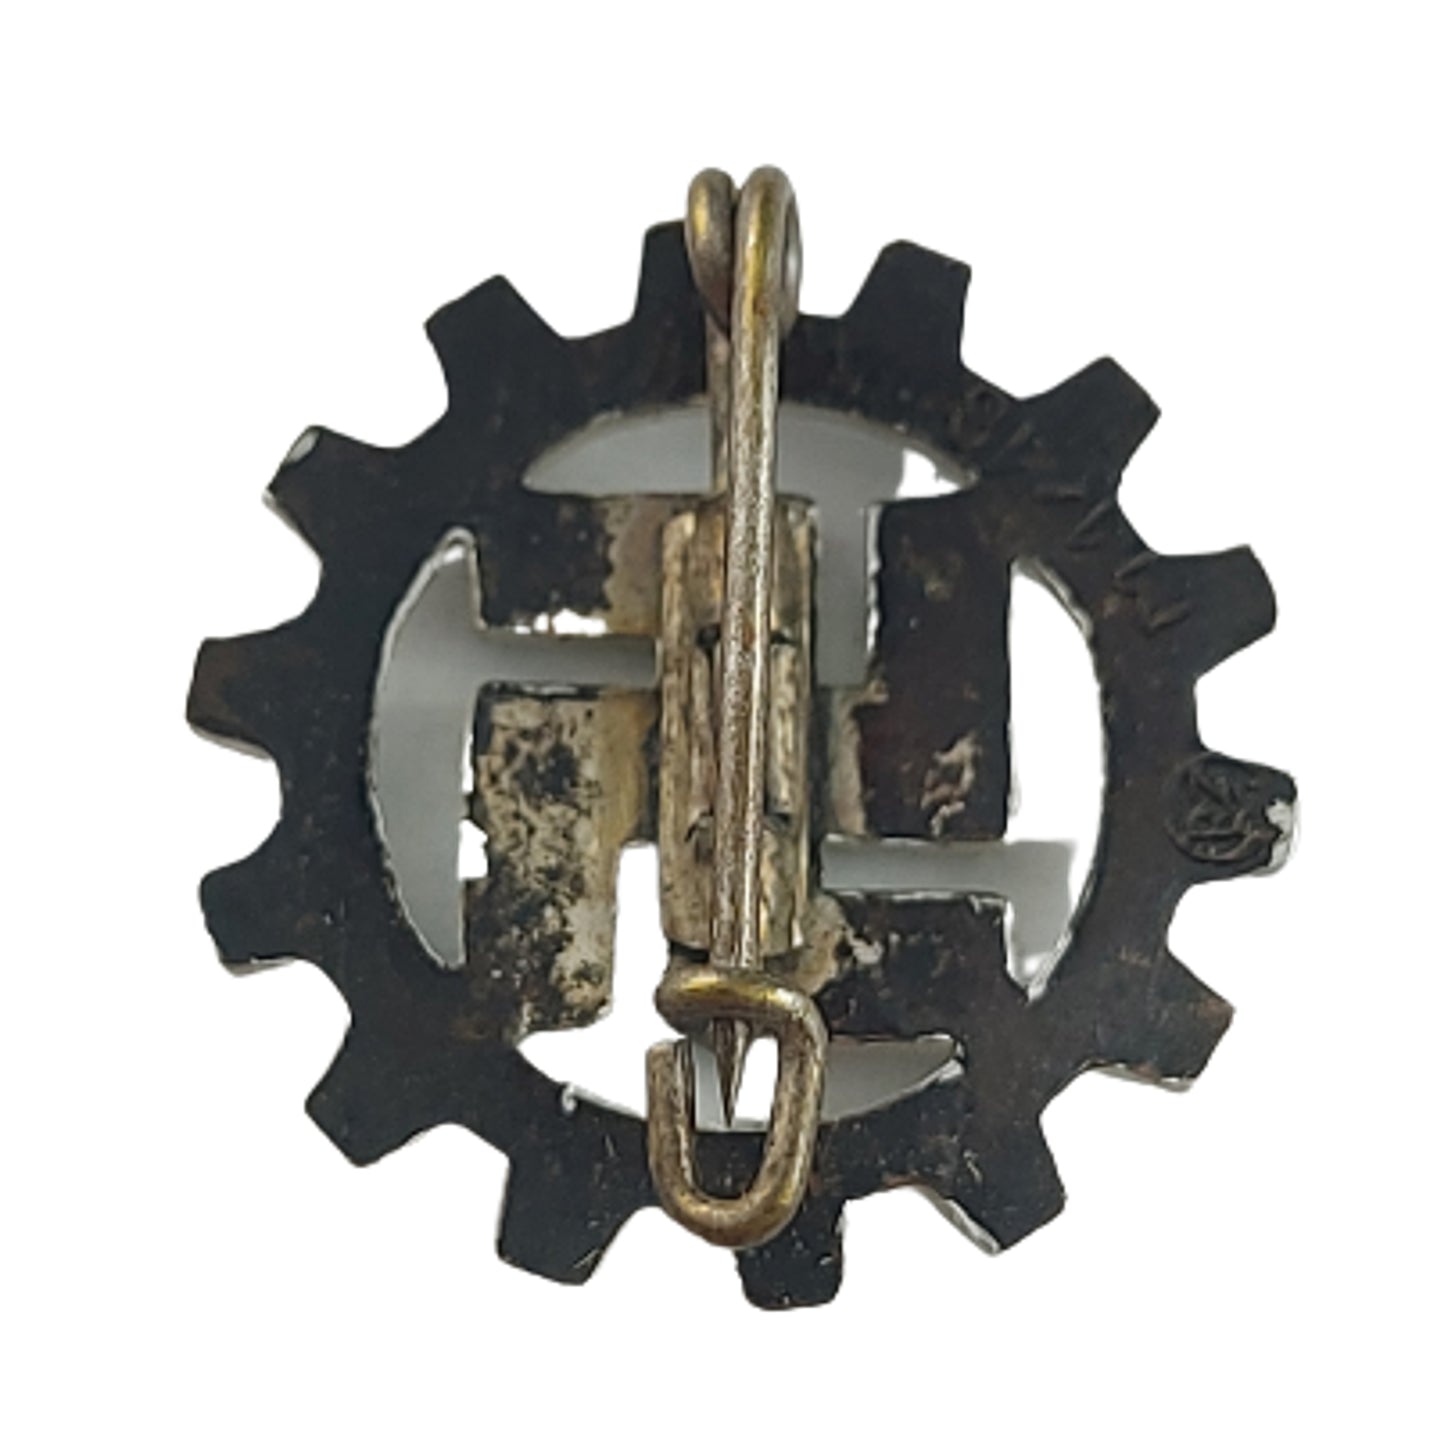 WW2 German DAF Member's Lapel Pin (Deutsche Arbeitsfront)